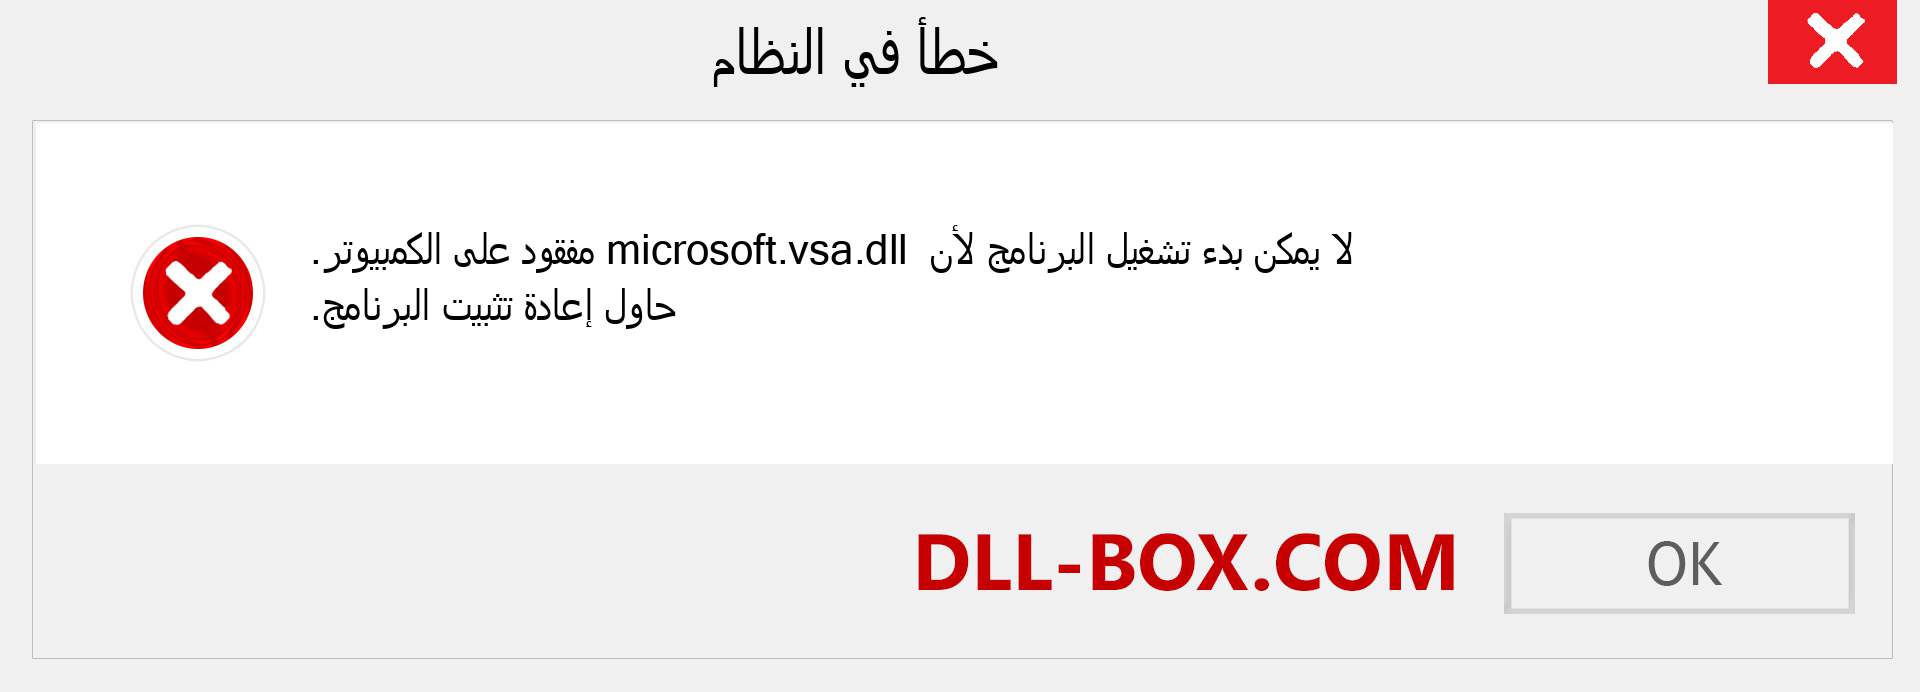 ملف microsoft.vsa.dll مفقود ؟. التنزيل لنظام التشغيل Windows 7 و 8 و 10 - إصلاح خطأ microsoft.vsa dll المفقود على Windows والصور والصور